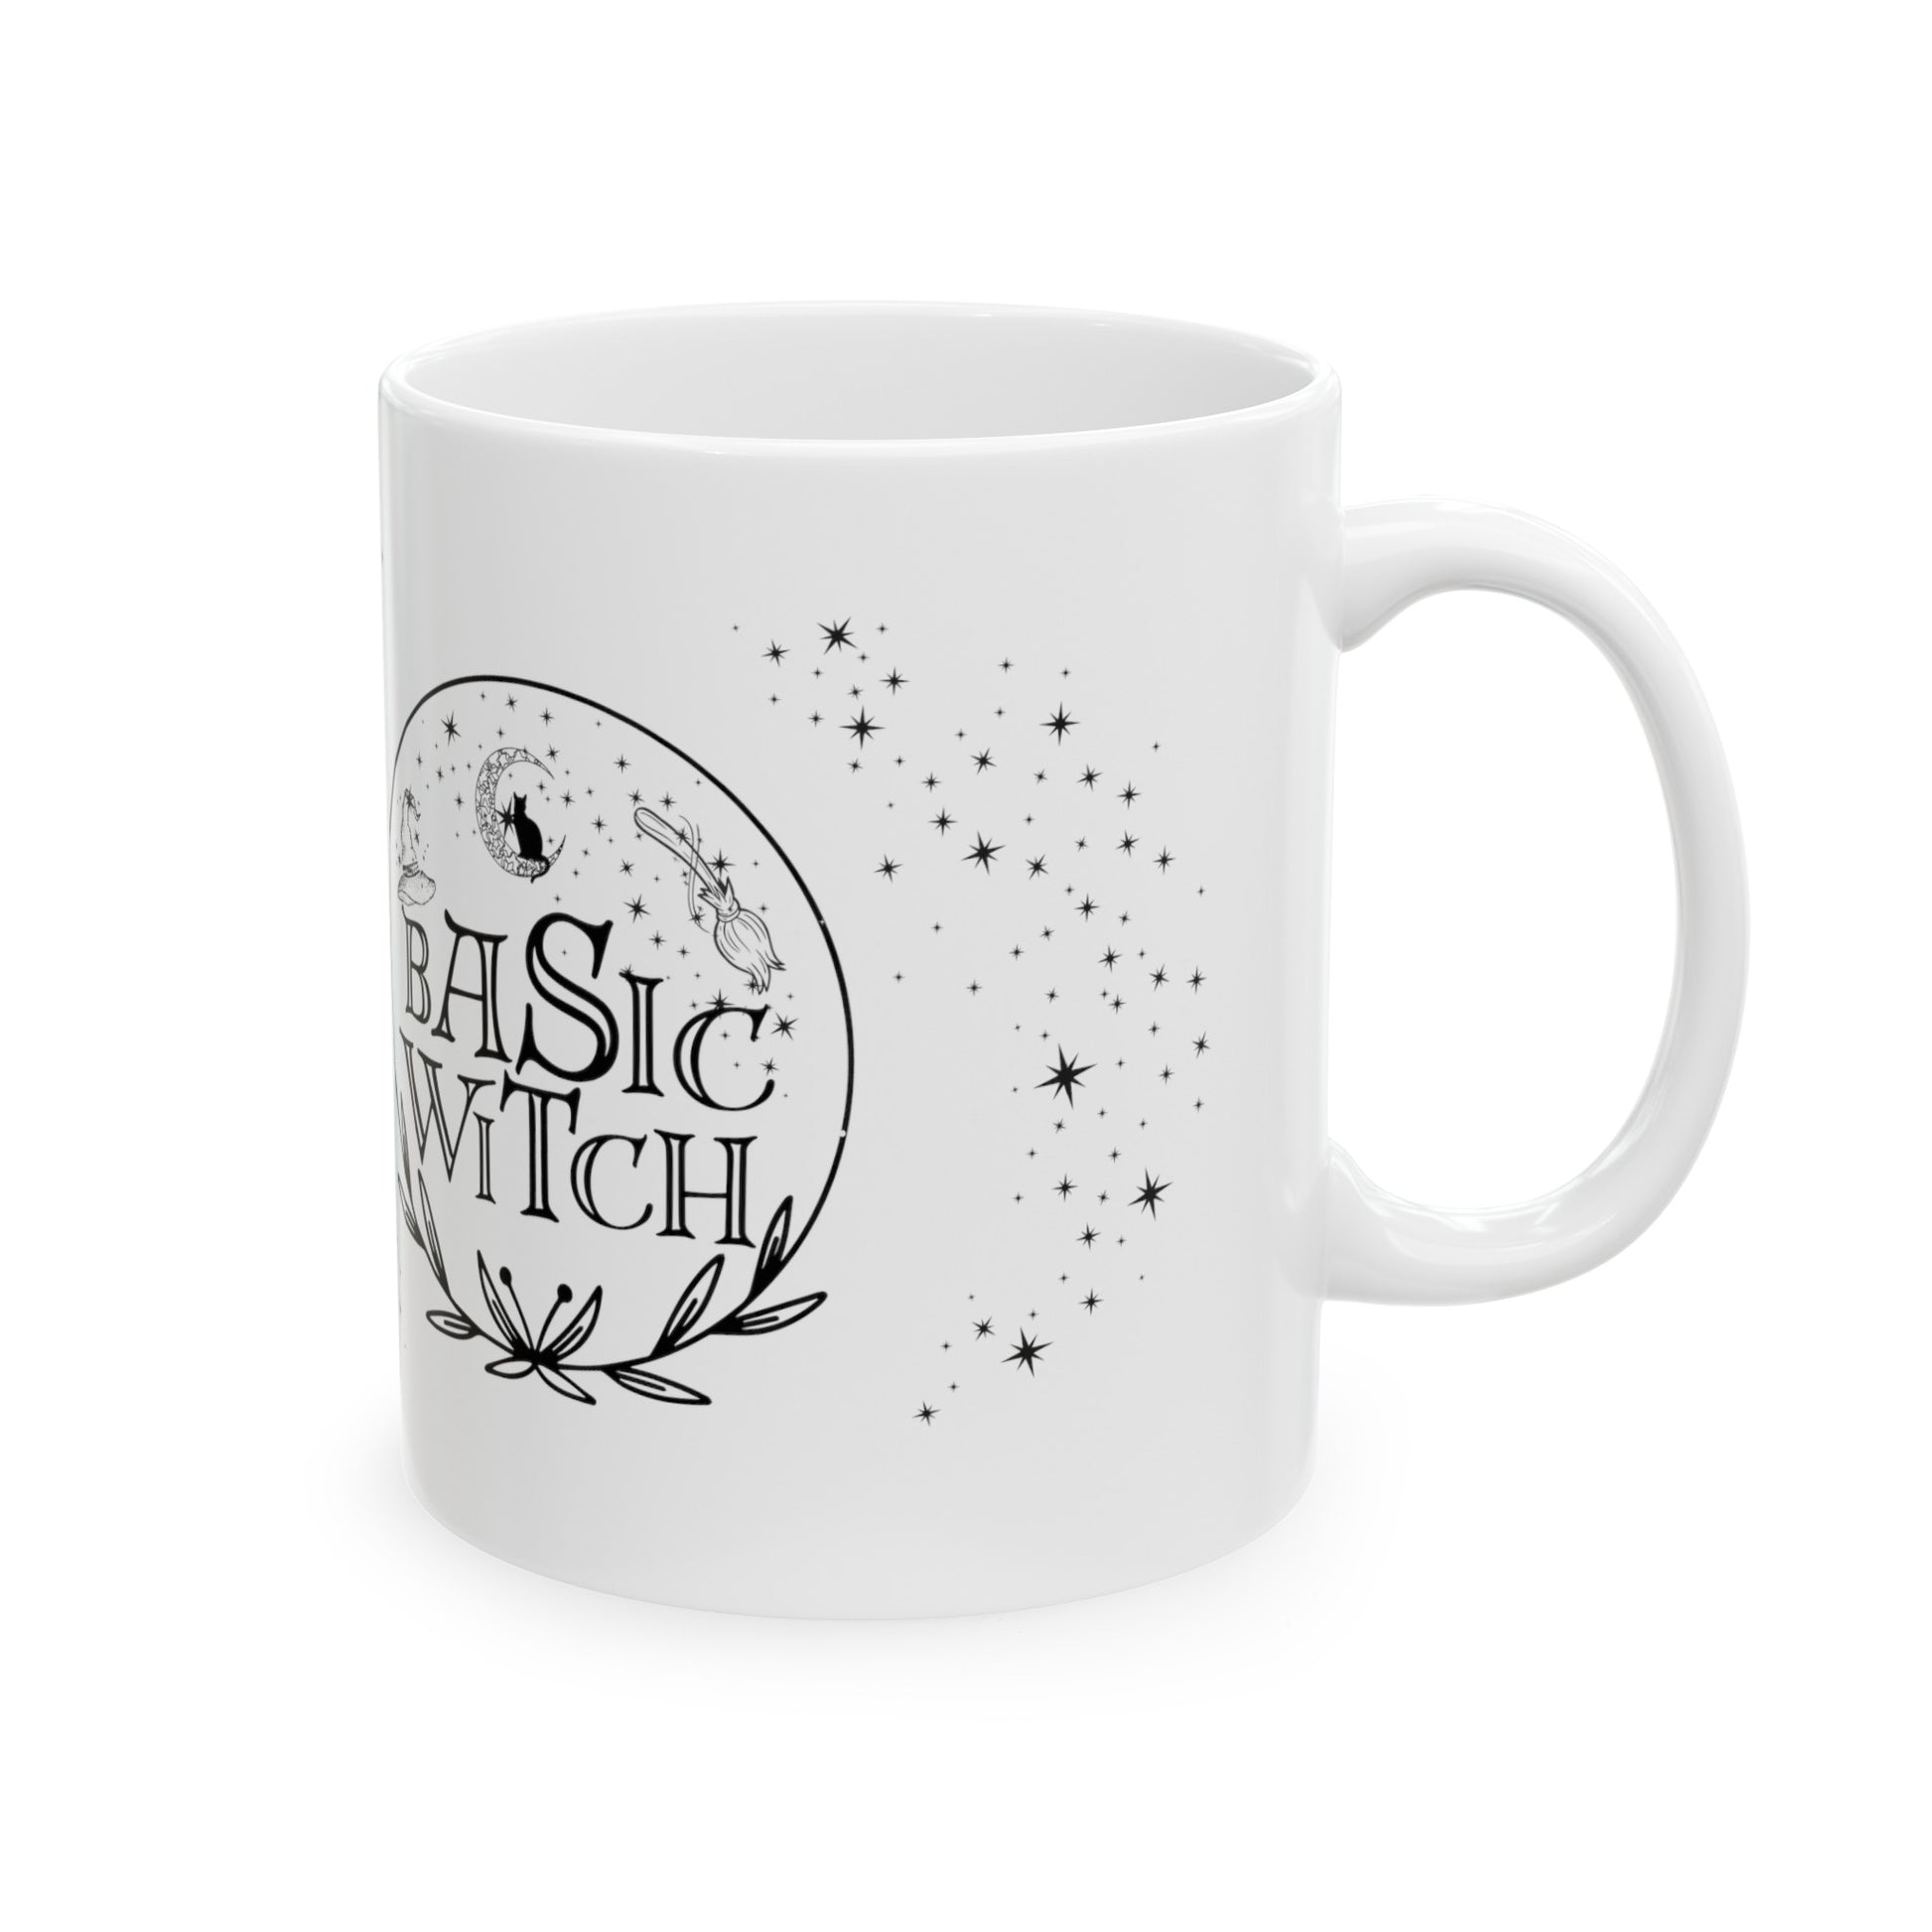 Basic Witch Ceramic Mug, 11oz, Witchy Mug - The Witchy Gypsy